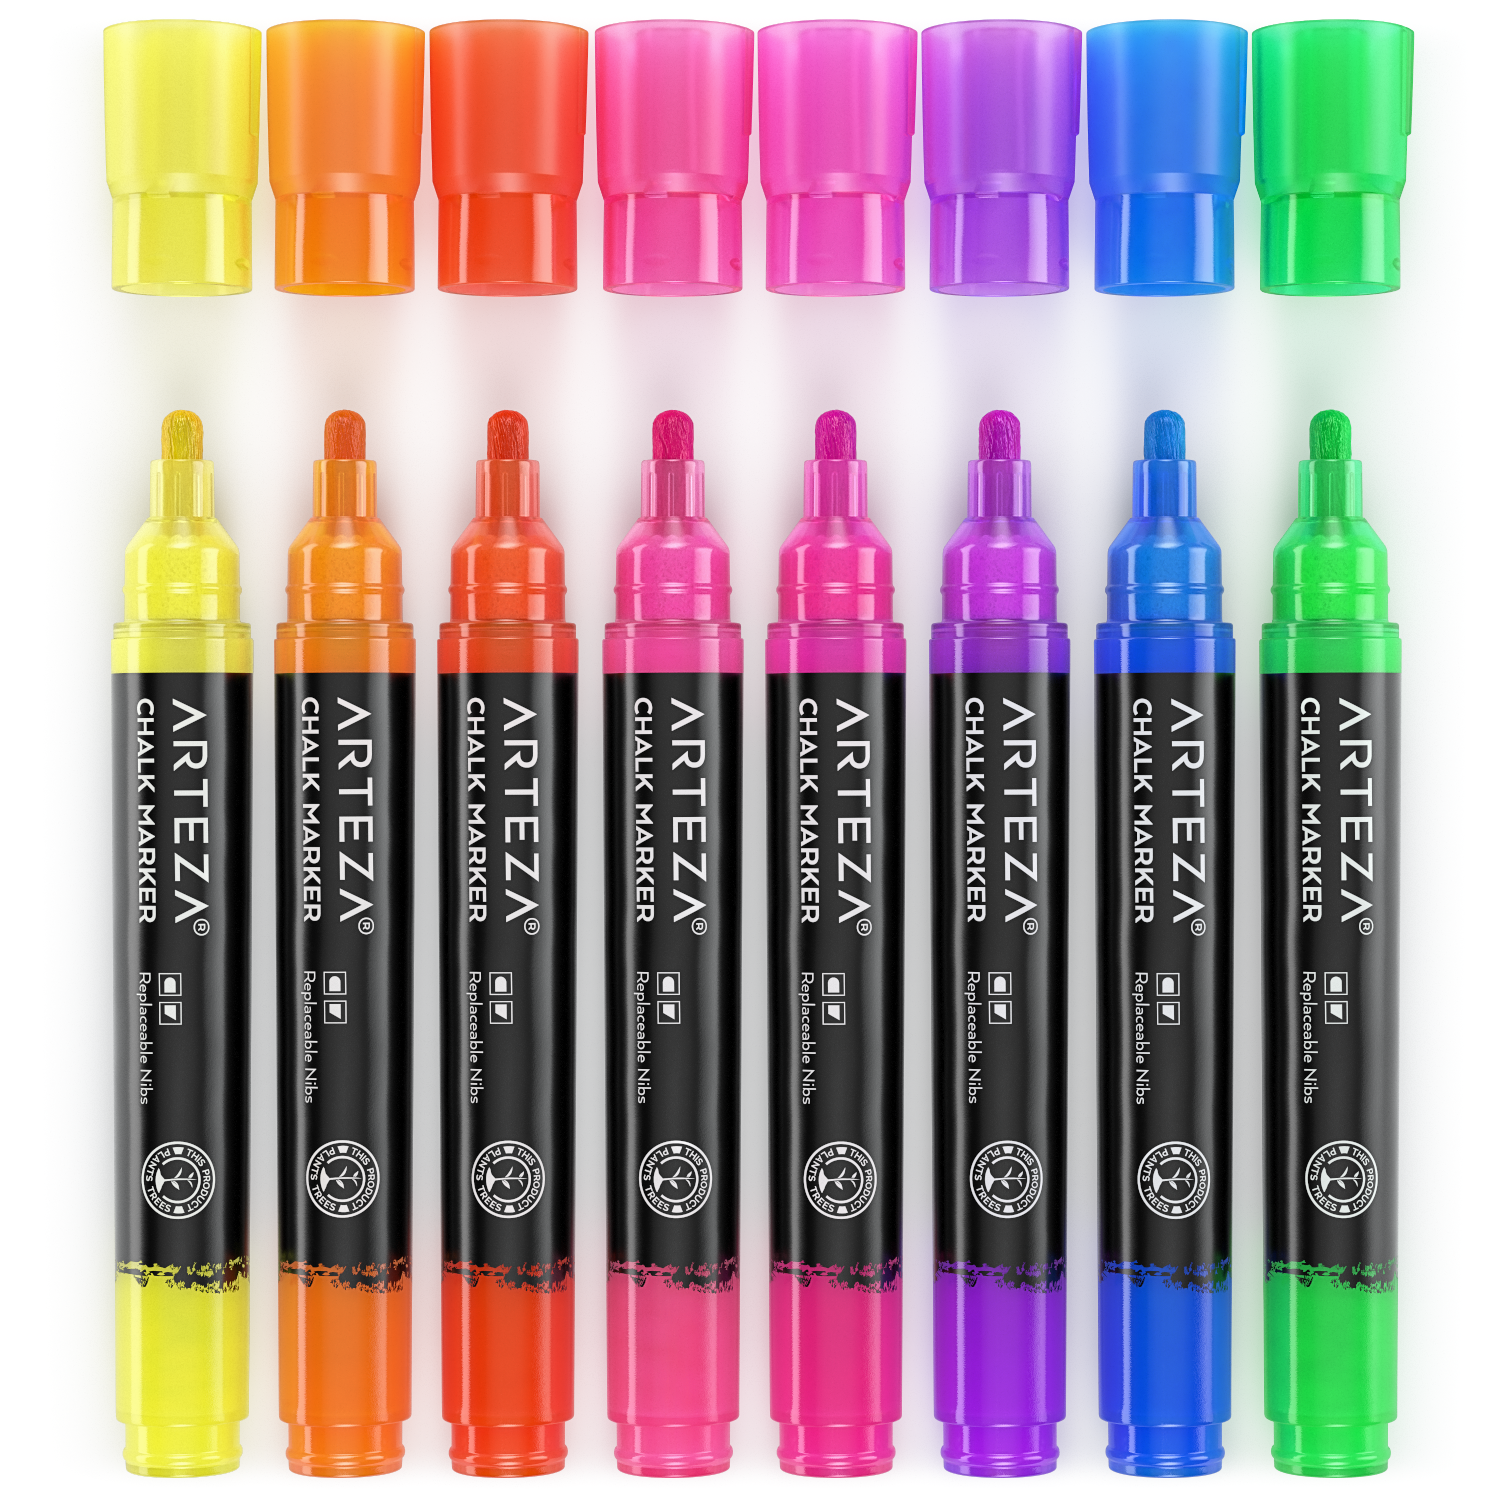 Neon Wet-Erase Chalk Markers - Set of 4